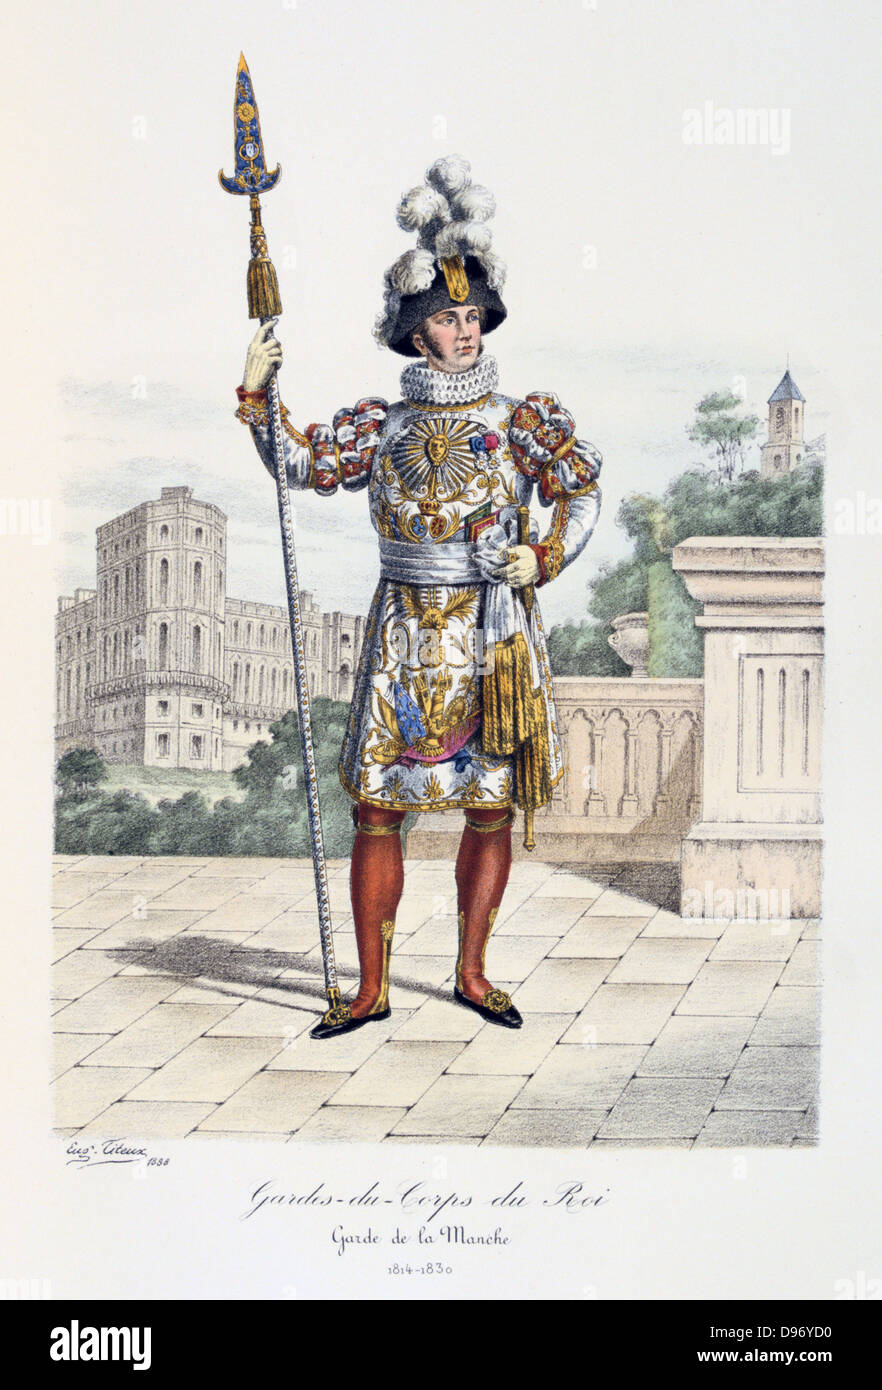 Soldat de la Garde royale en uniforme de cérémonie, 1814. À partir de 'Histoire de la Maison Militaire du Roi de 1814 a 1830" par Eugène Titeux, Paris, 1890. Banque D'Images